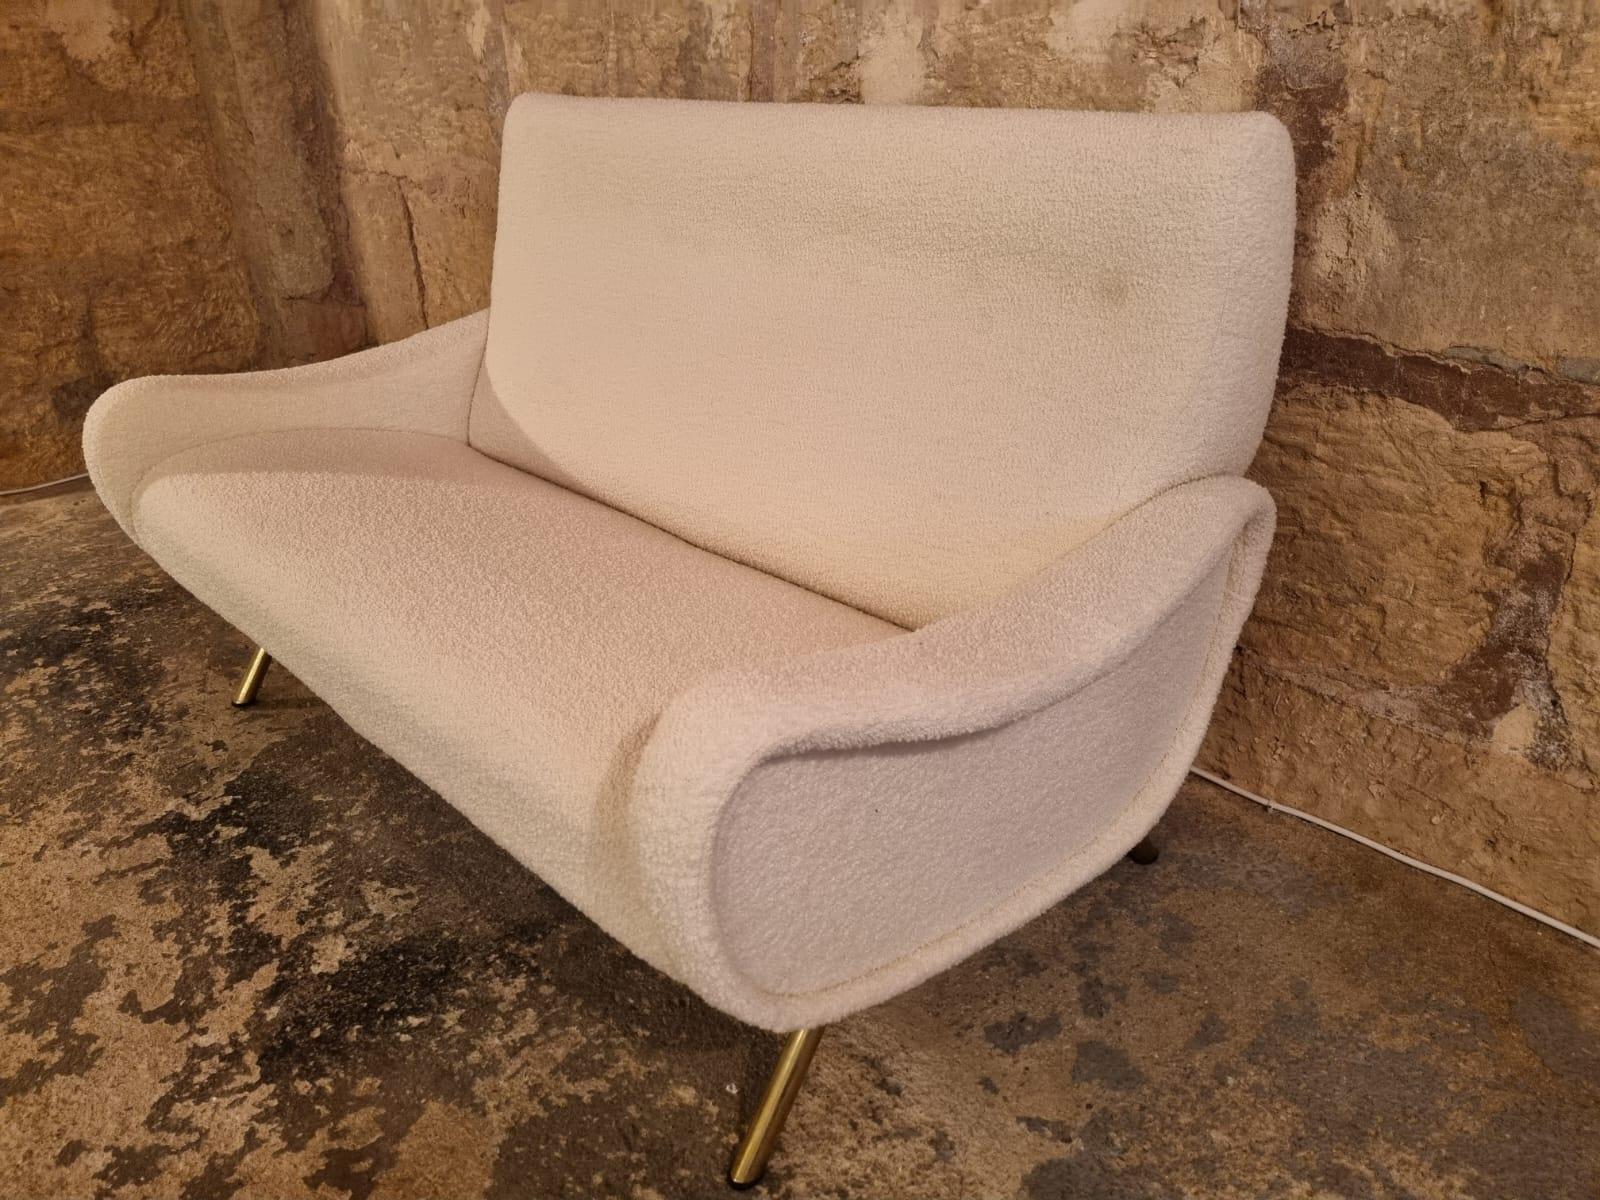 Canapé Lady ou Love seat du designer Marco Zanusso des années 1950 pour Arflex.
Entièrement restauré dans la plus haute qualité avec un magnifique tissu bouclé (Bouclé) de couleur crème de Bisson Bruneel, AUSSI deux fauteuils Lady Chairs disponibles